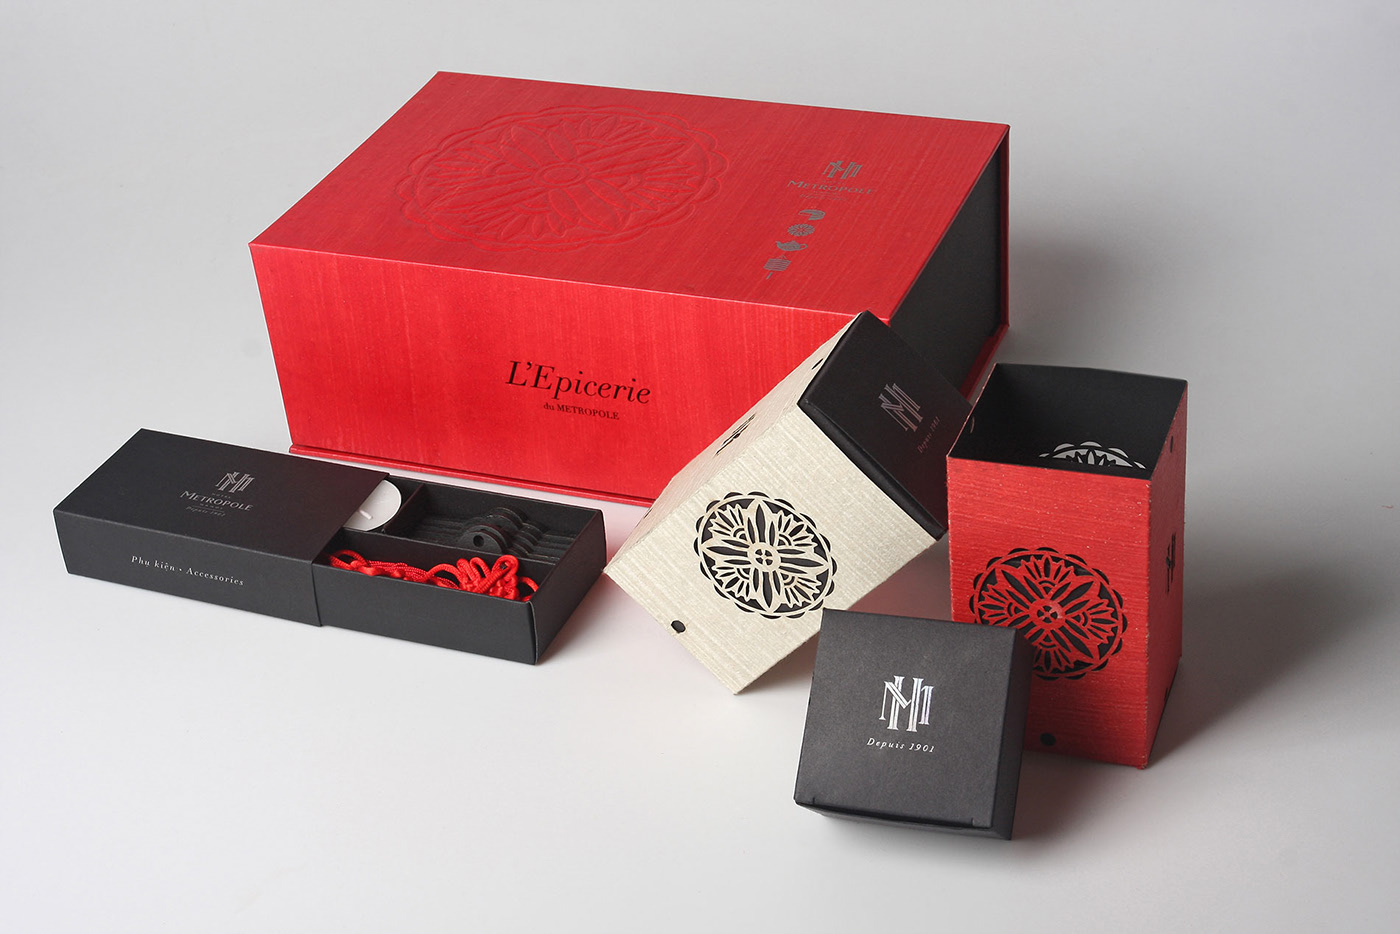 企业定制创意月饼礼盒包装,月饼礼盒包装设计怎么突出商标形象